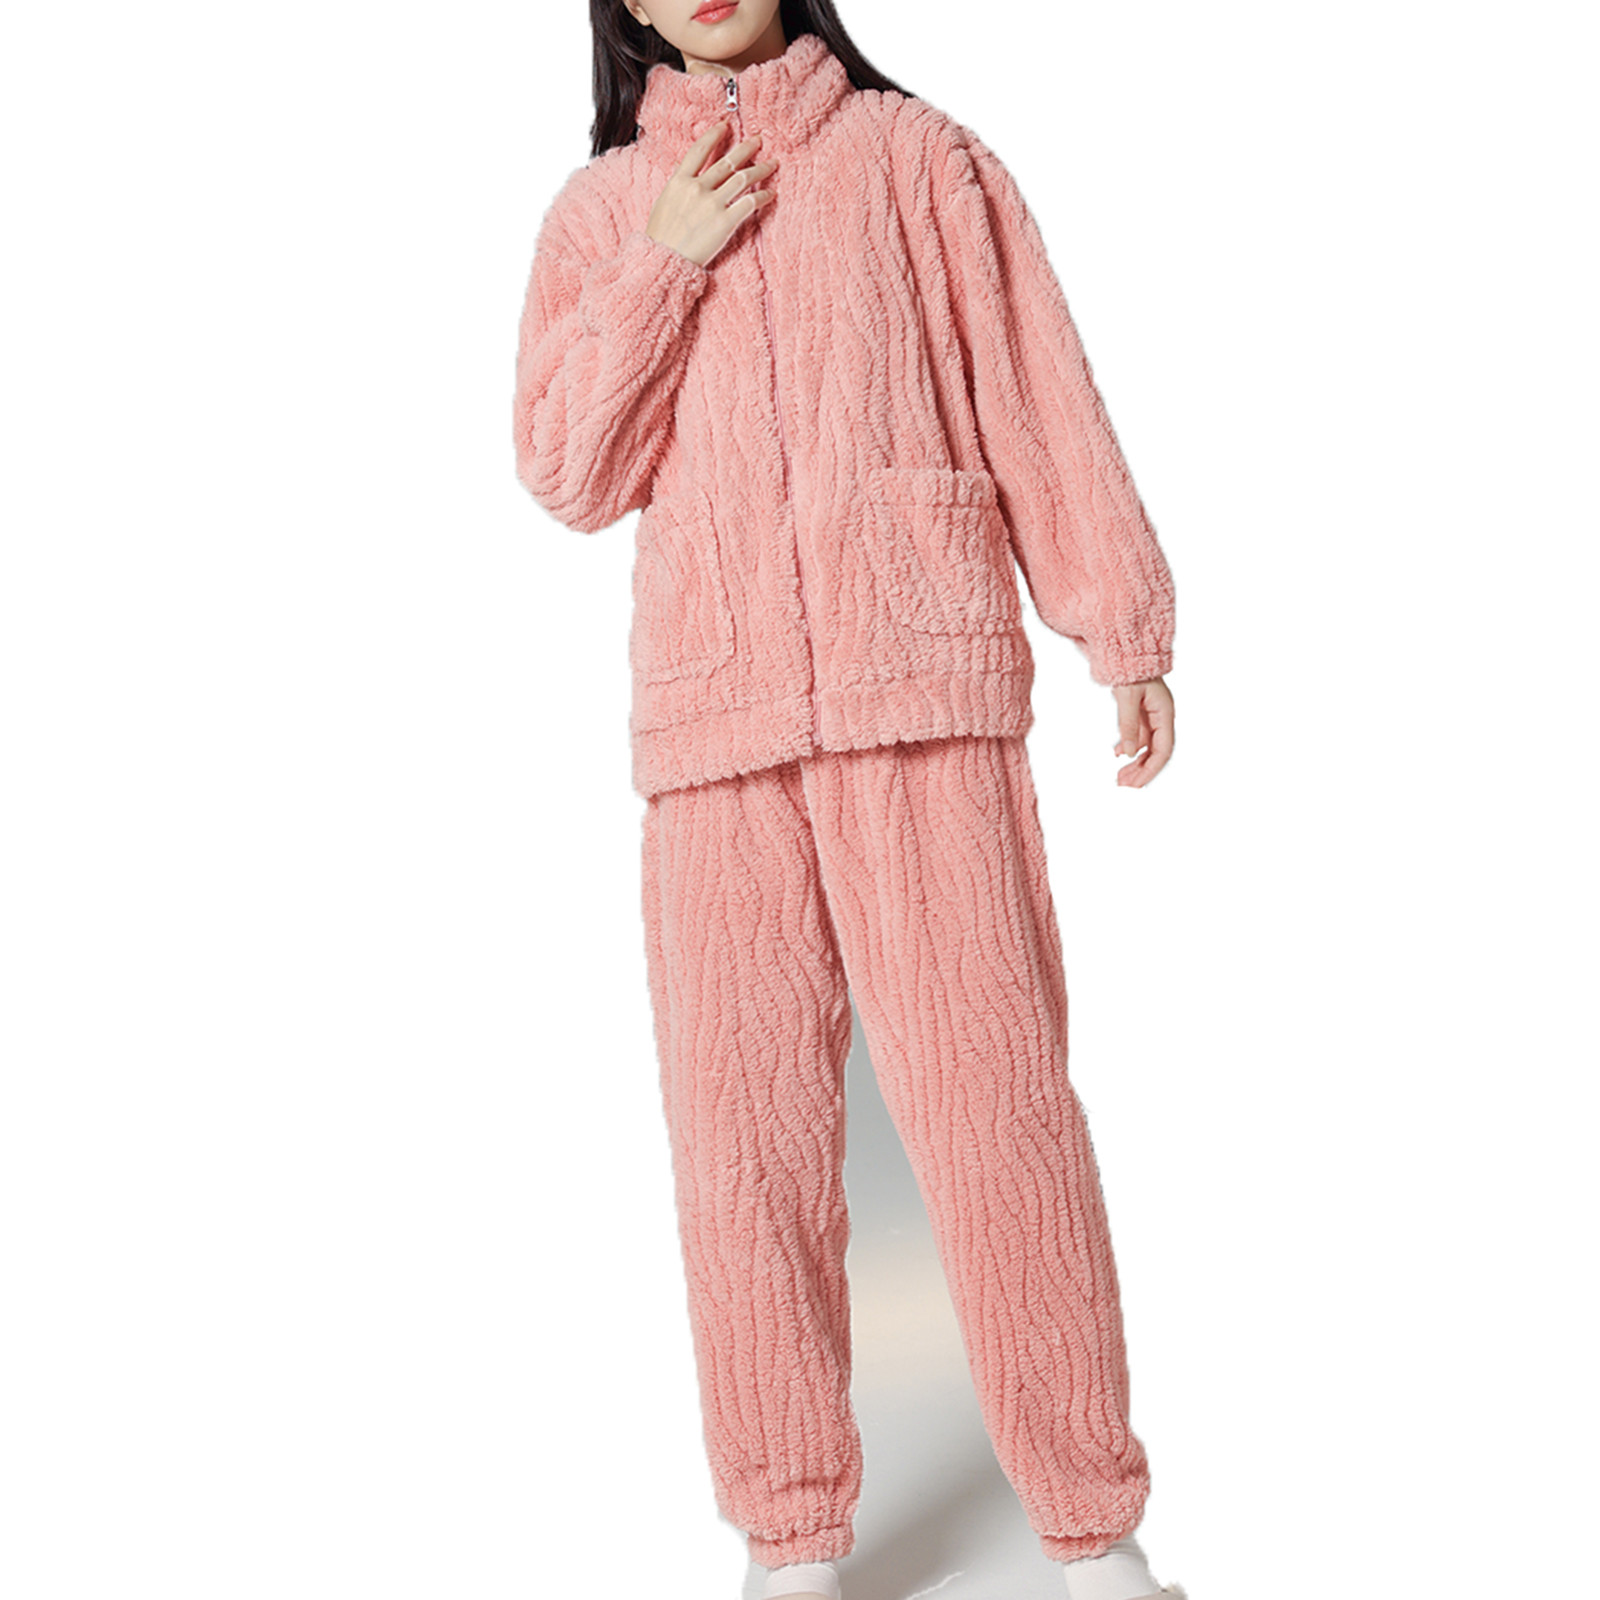 BLVB Women's Plush Fluffy Pajamas Sets Soft Fleece 2 Piece Outfits ...